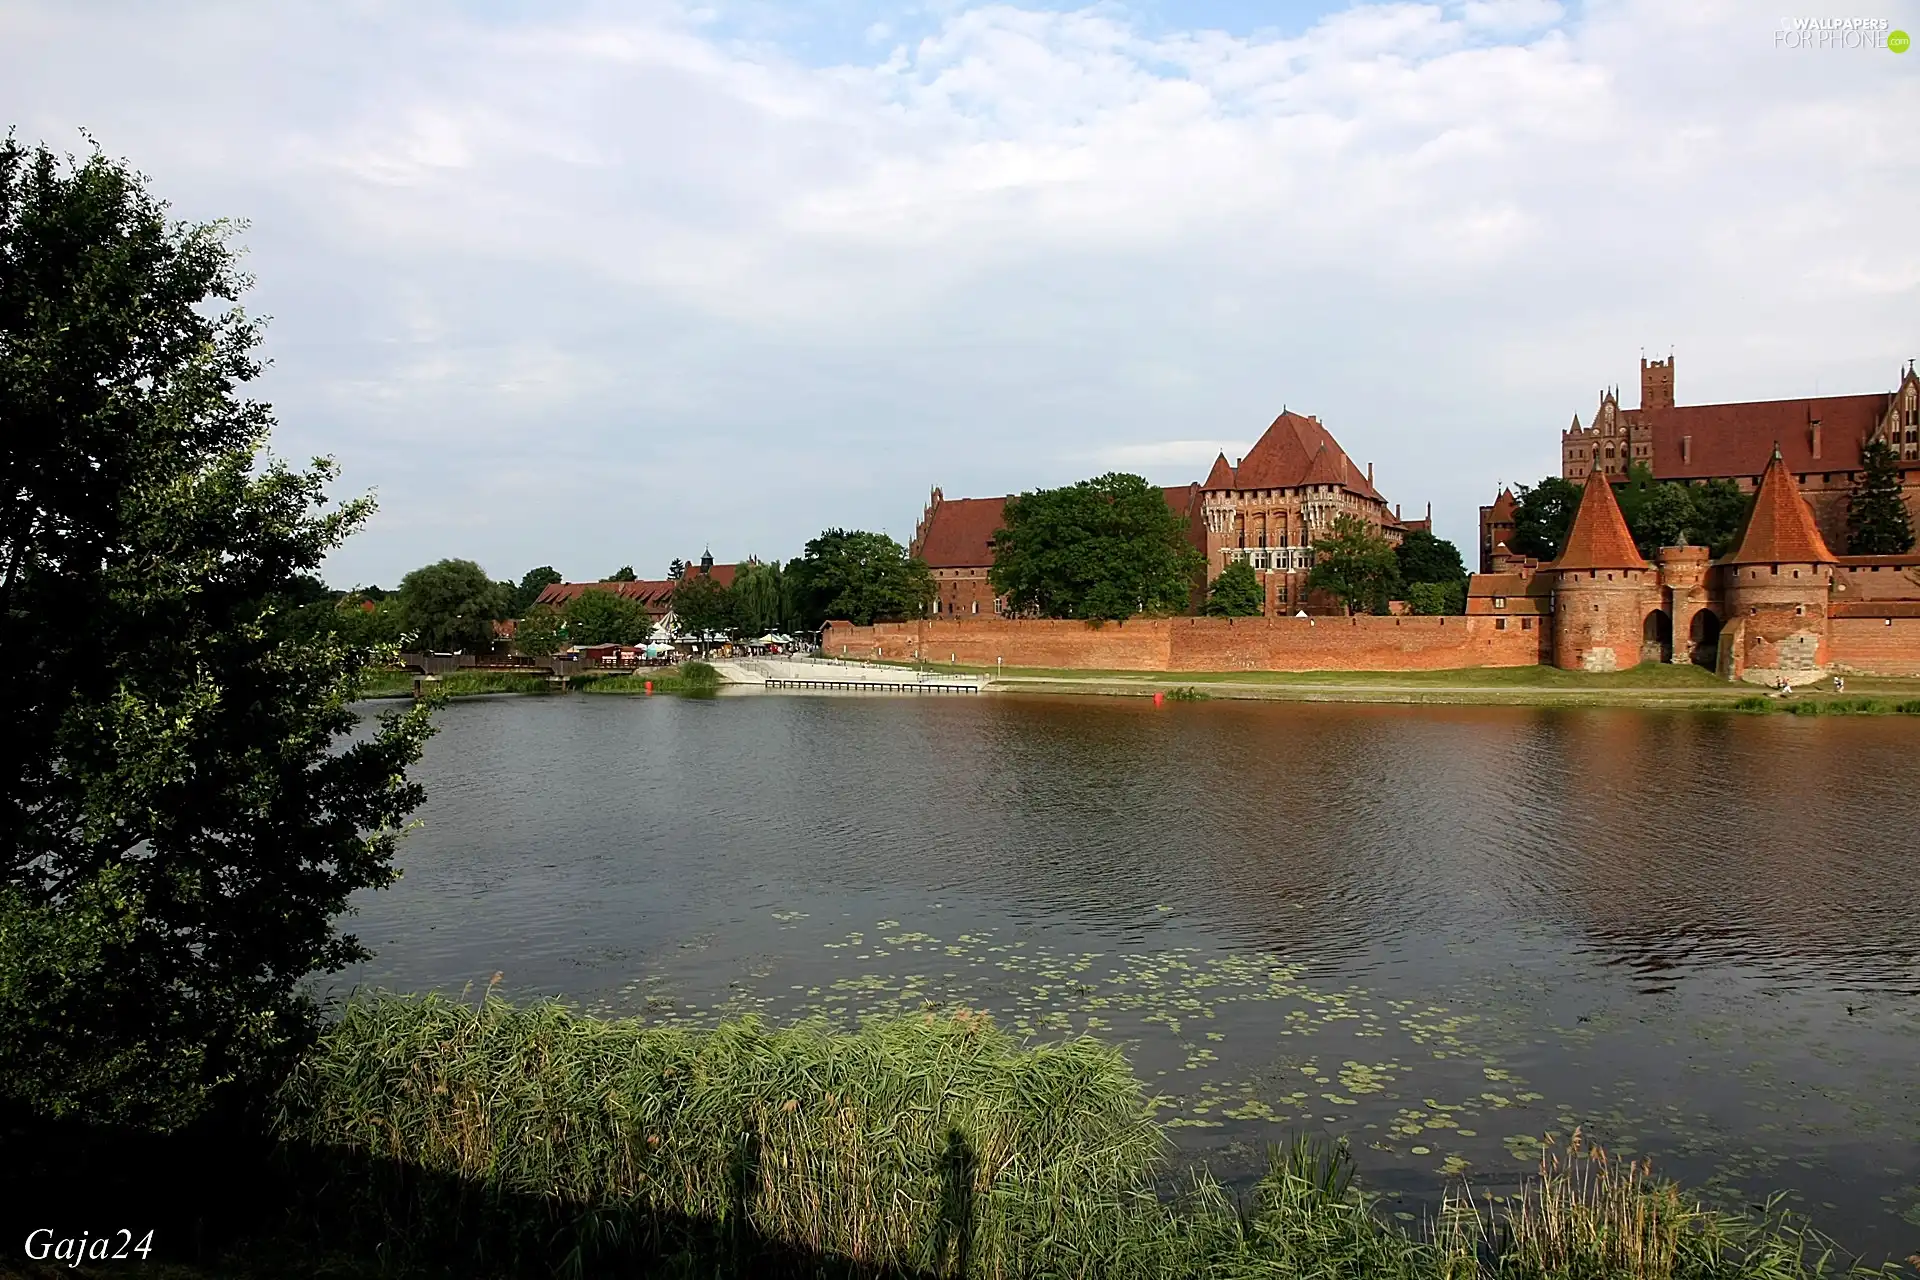 Teutonic Castle, Malbork, Poland, Nogat River